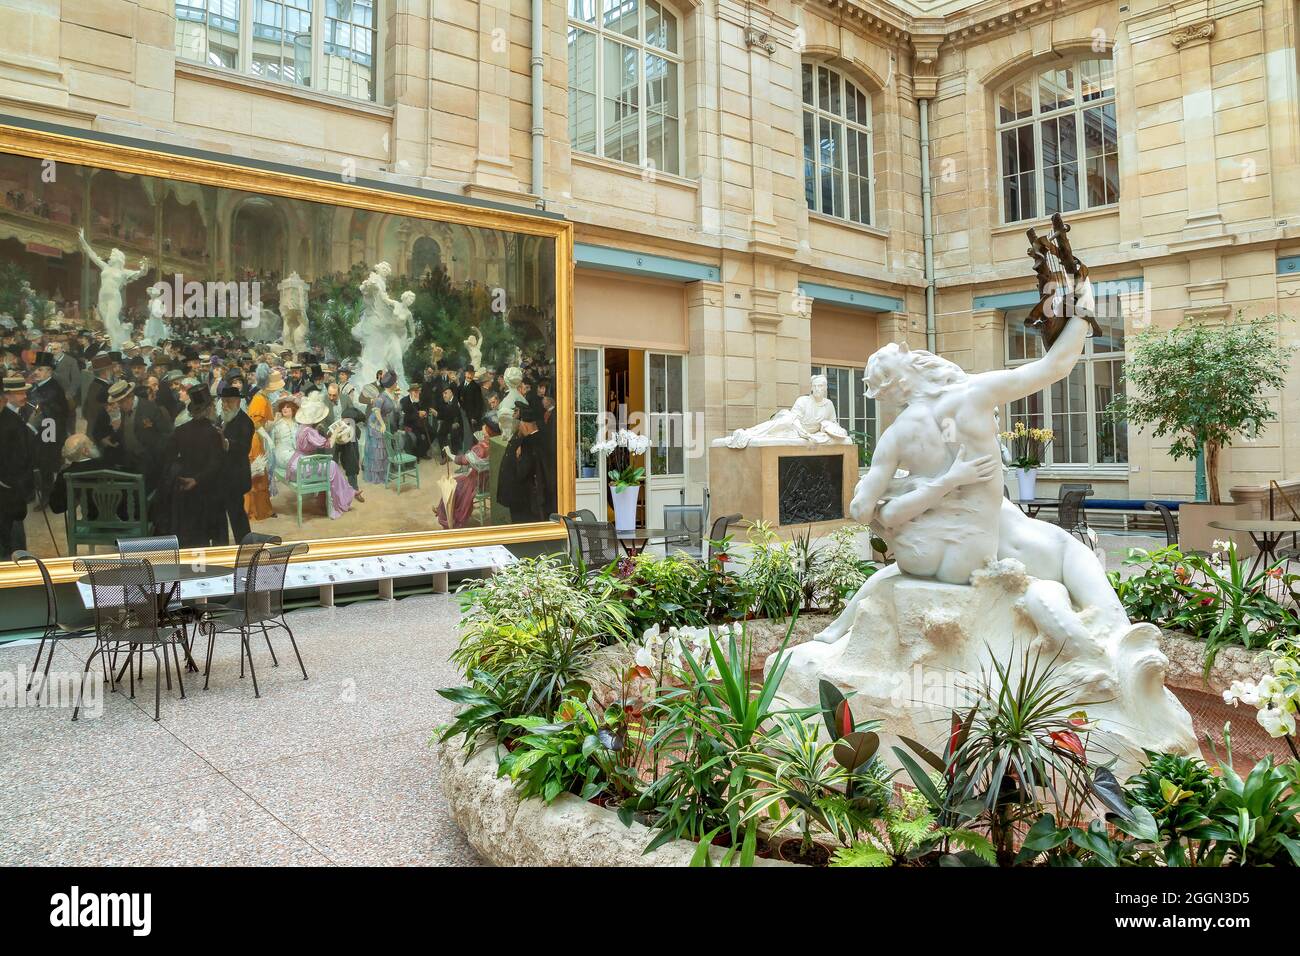 Le Jardin des sculptures inside Rouen's Museum of Fine Arts, France Stock Photo